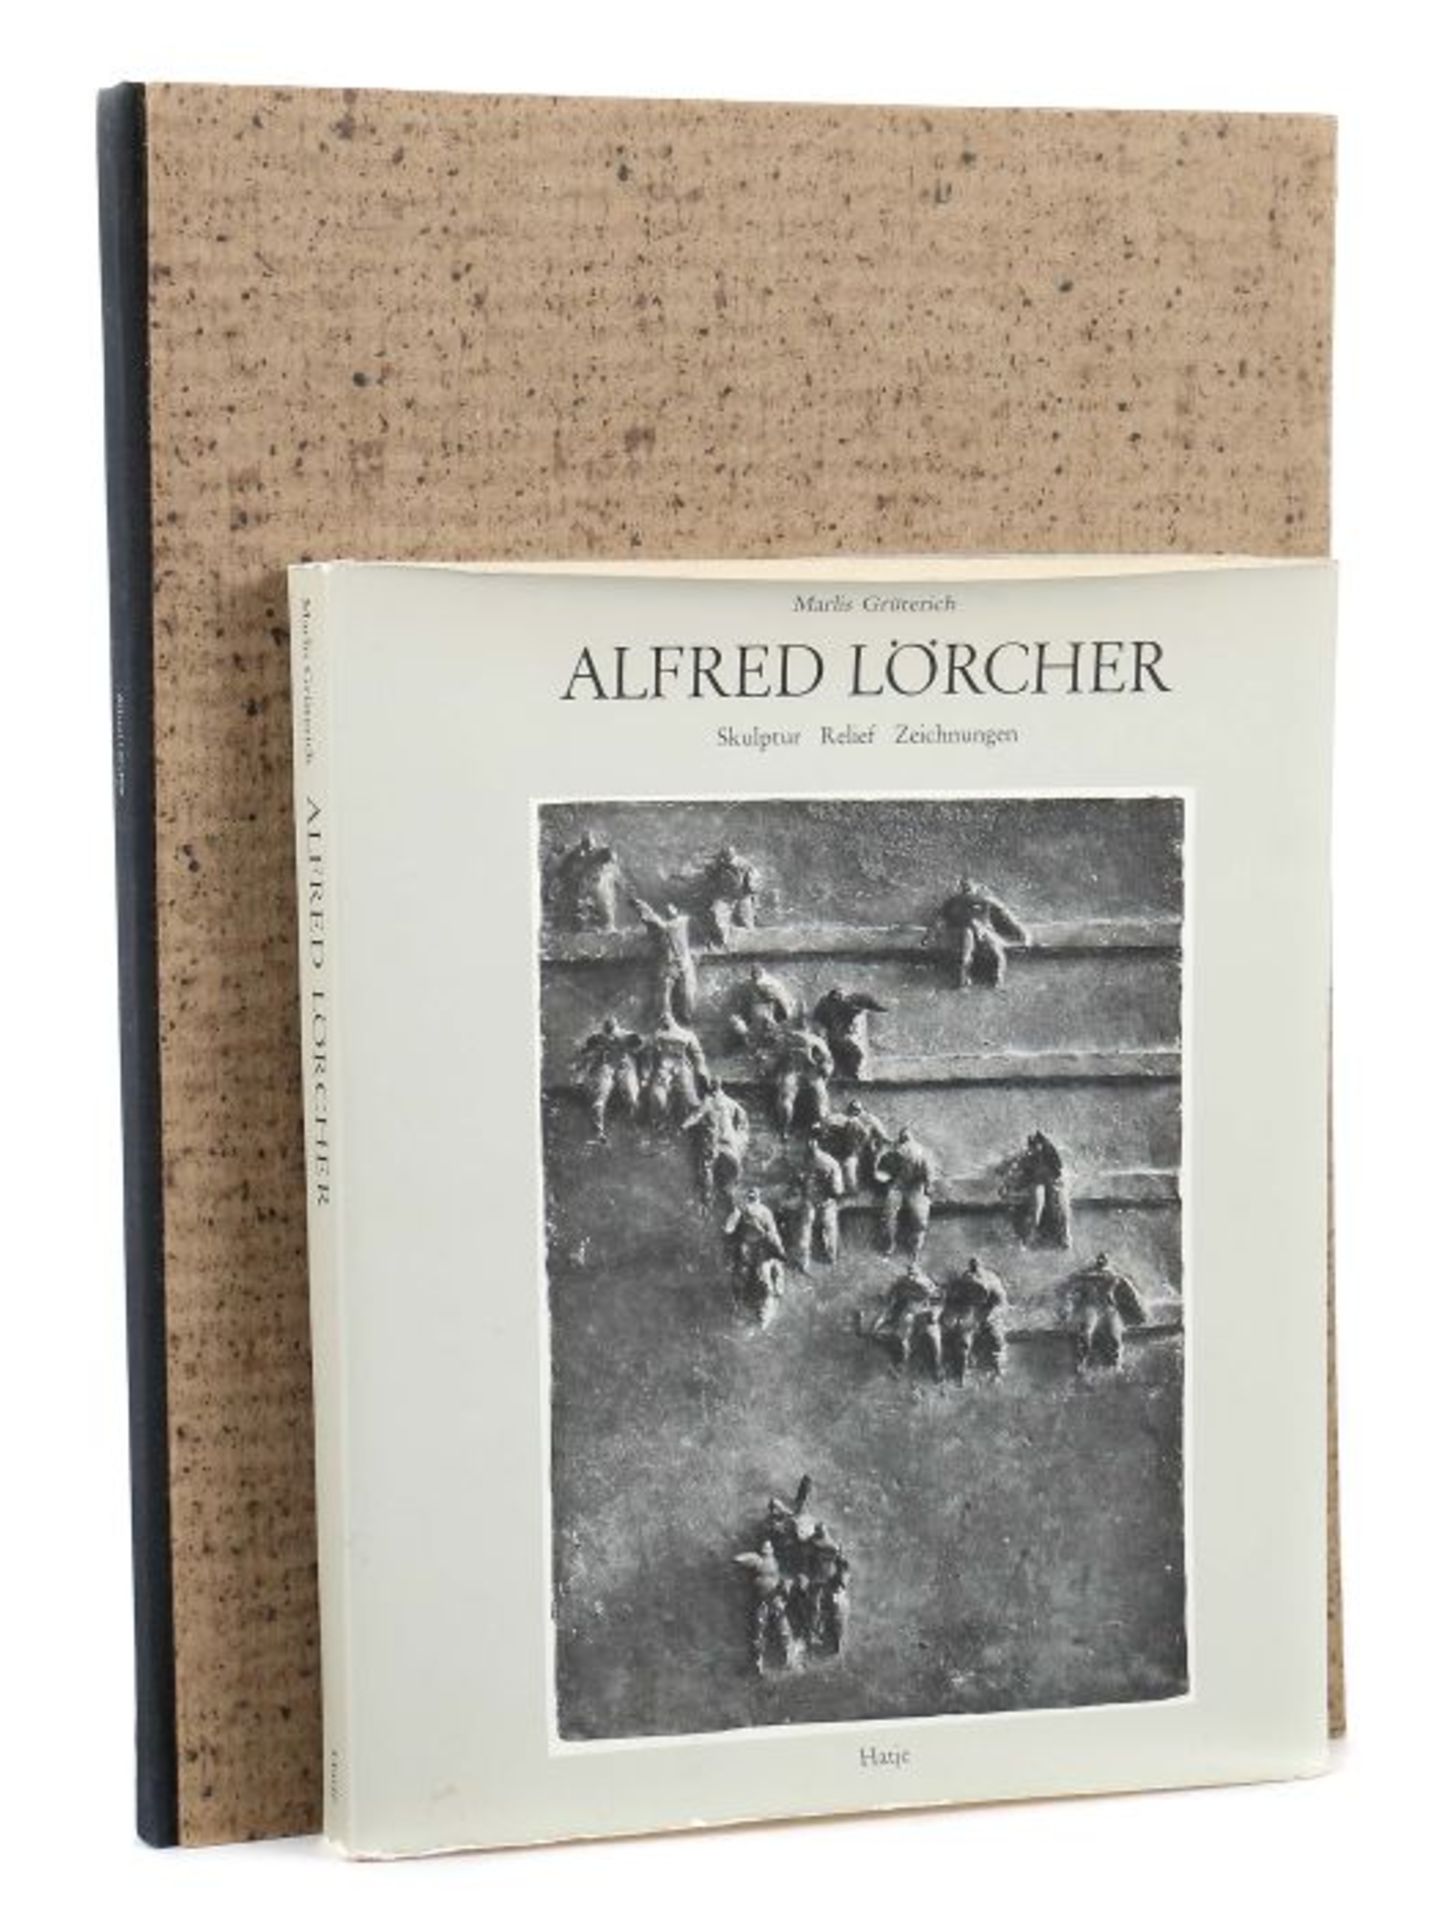 2 Bücher Alfred Lörcher Marlis Grüterich, Alfred Lörcher, Skulptur Relief Zeichnungen, Stuttgart,